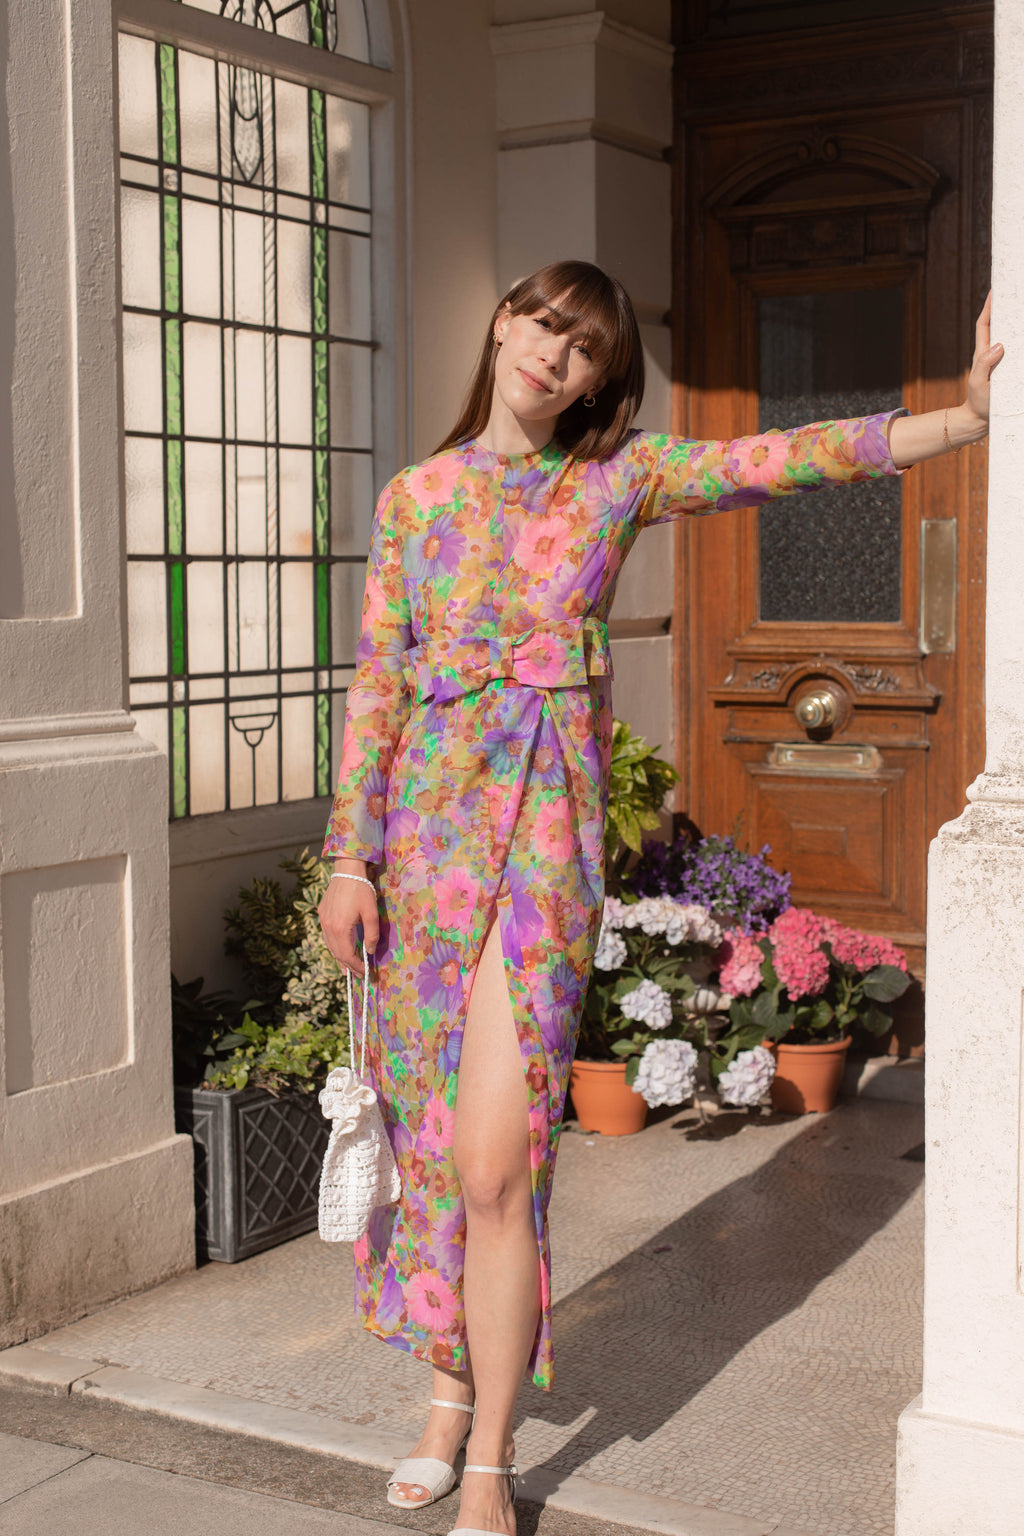 Anita is Vintage 60s Multi Colour Floral Maxi Dress